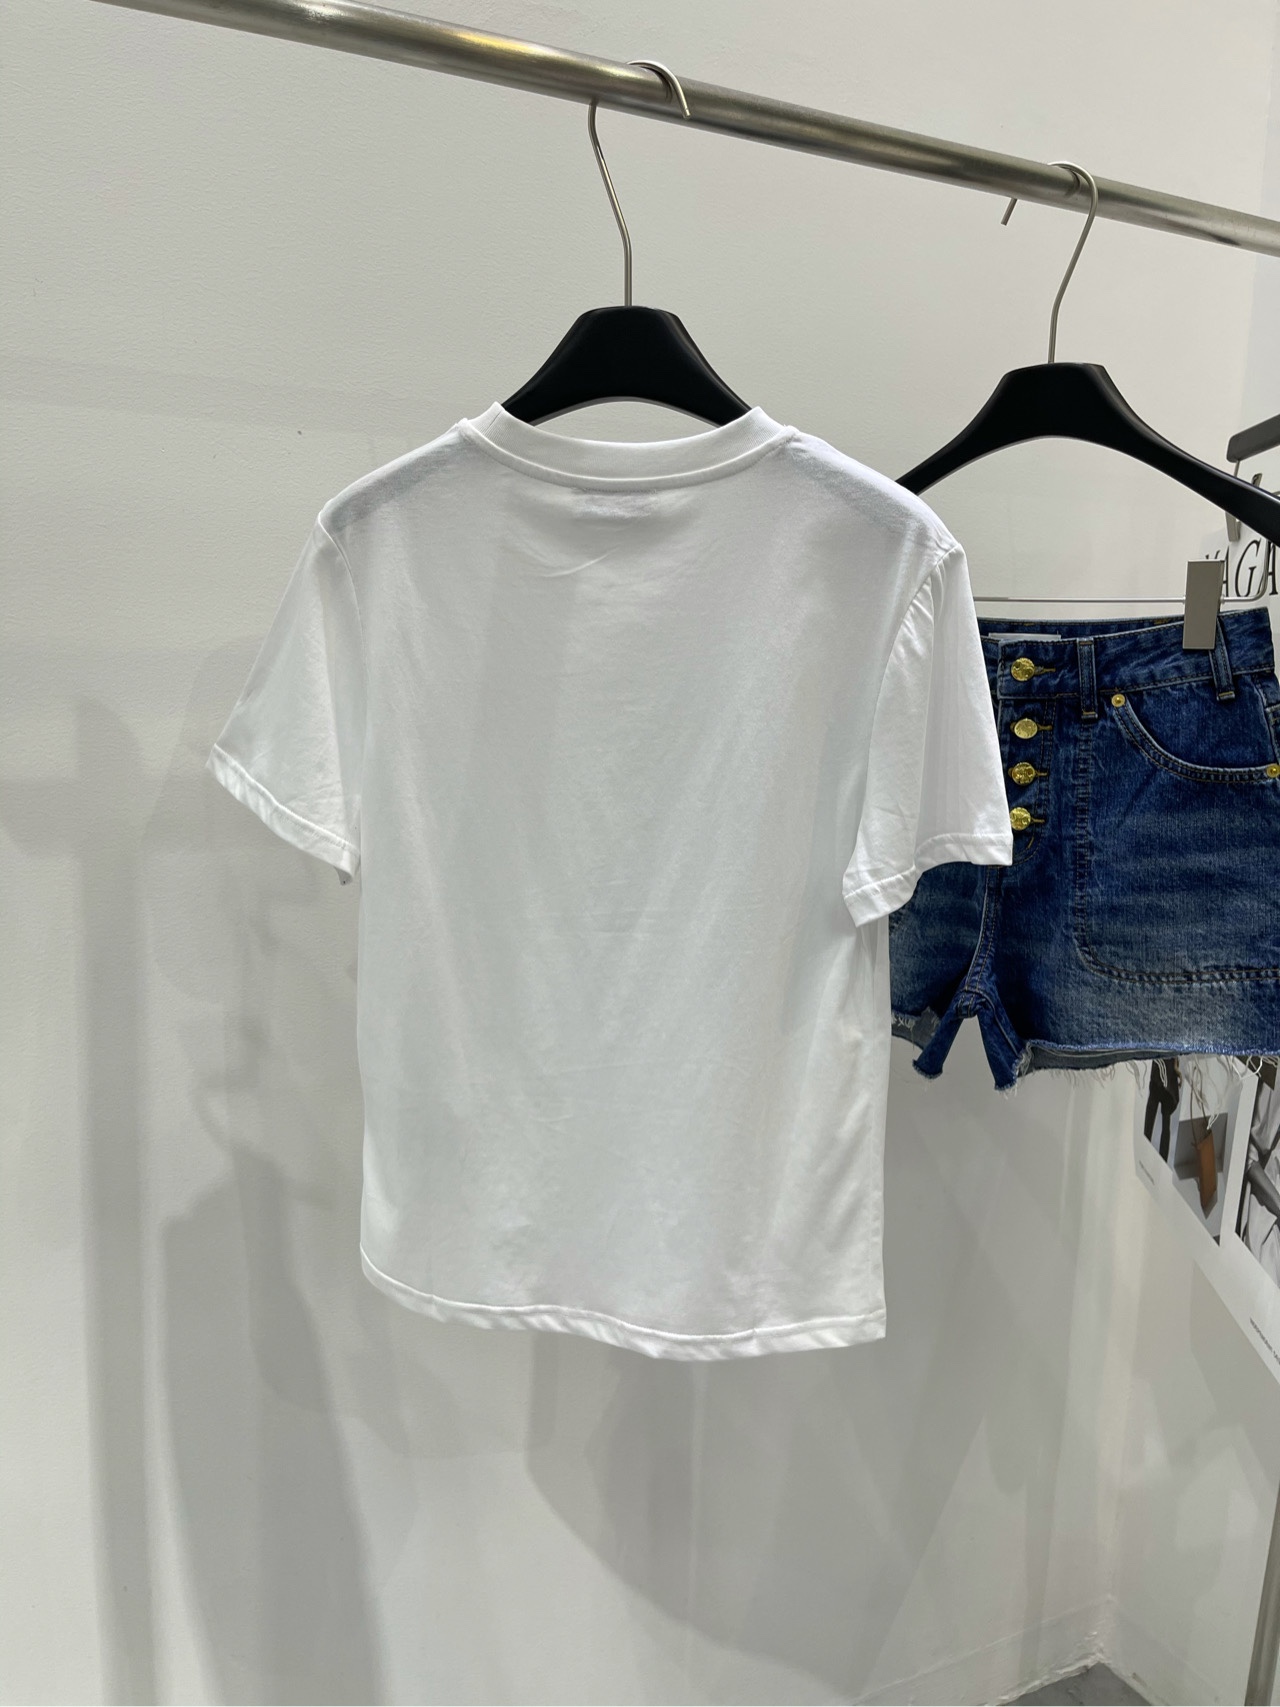 ミュウミュウチョーカーコピー Tシャツ トップス 柔らかい シンプル ゆったり 短袖 爆買い大得価 ホワイト_2